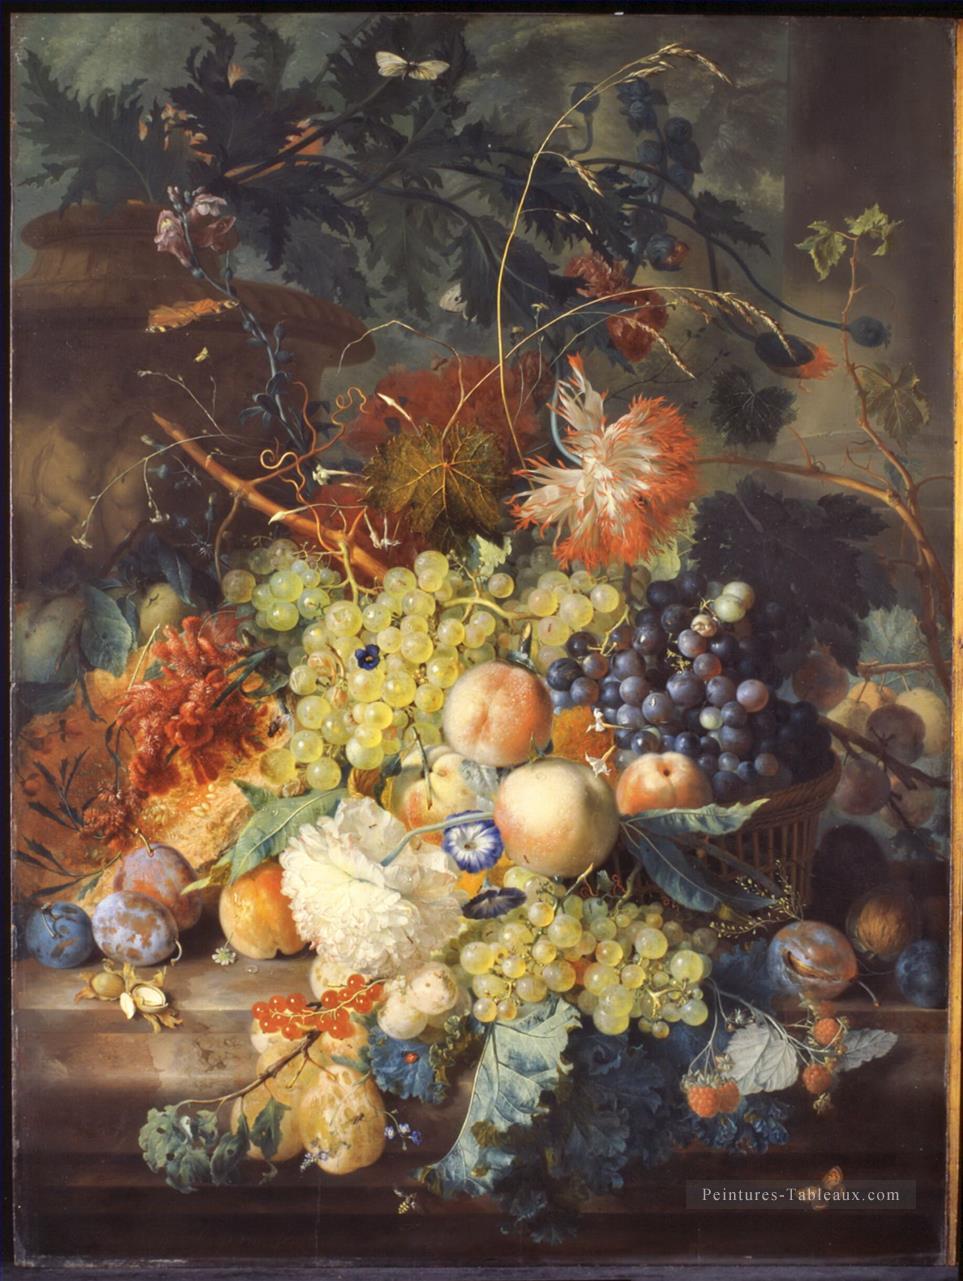 Classique nature morte de fruits entaped dans un panier Jan van Huysum Peintures à l'huile